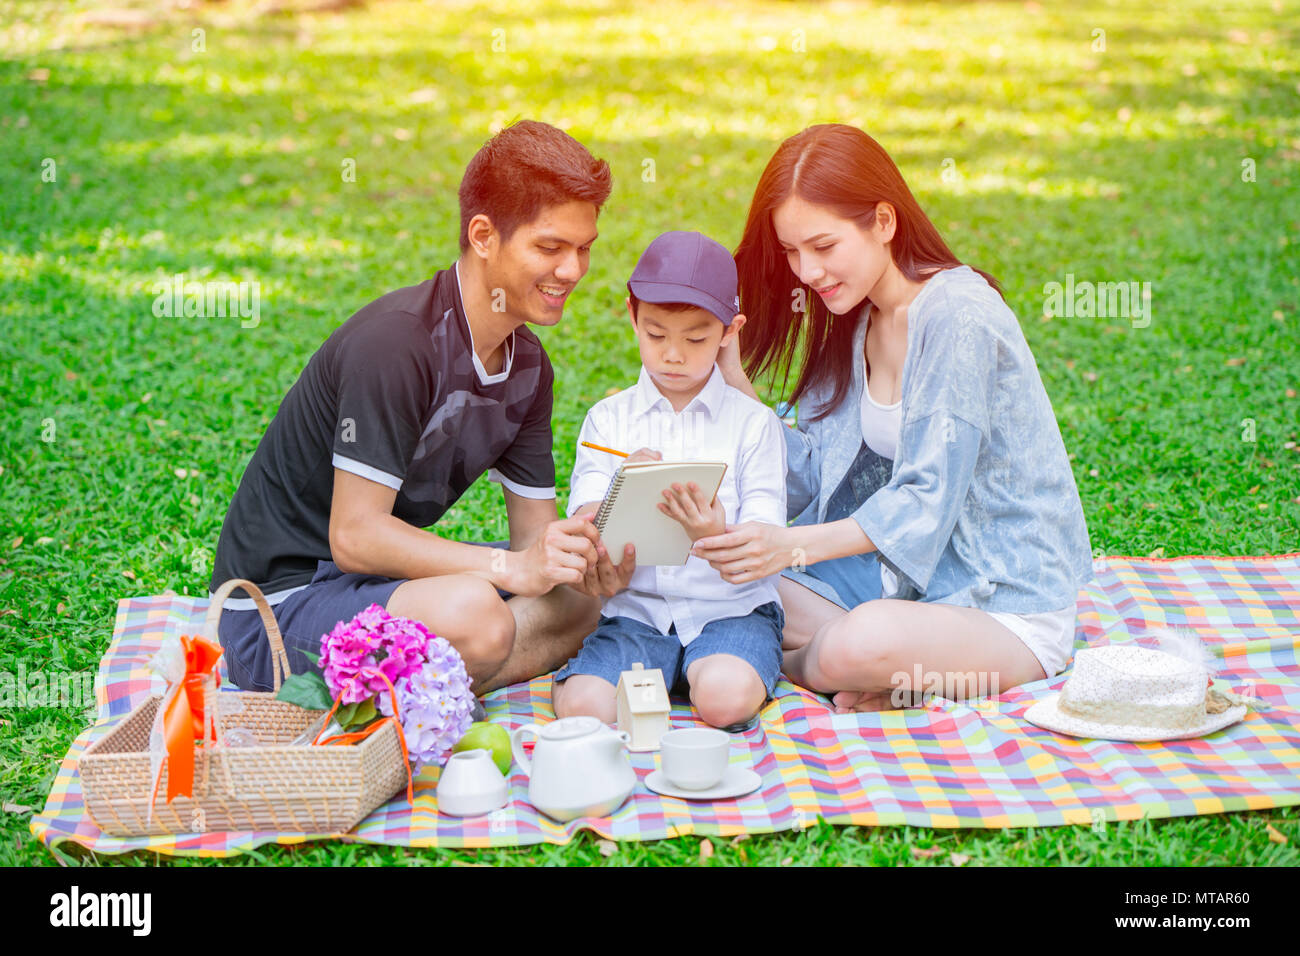 La famille de l'éducation asiatique teen teching au gosse heureux vacances moment pique-nique dans Green Park Banque D'Images